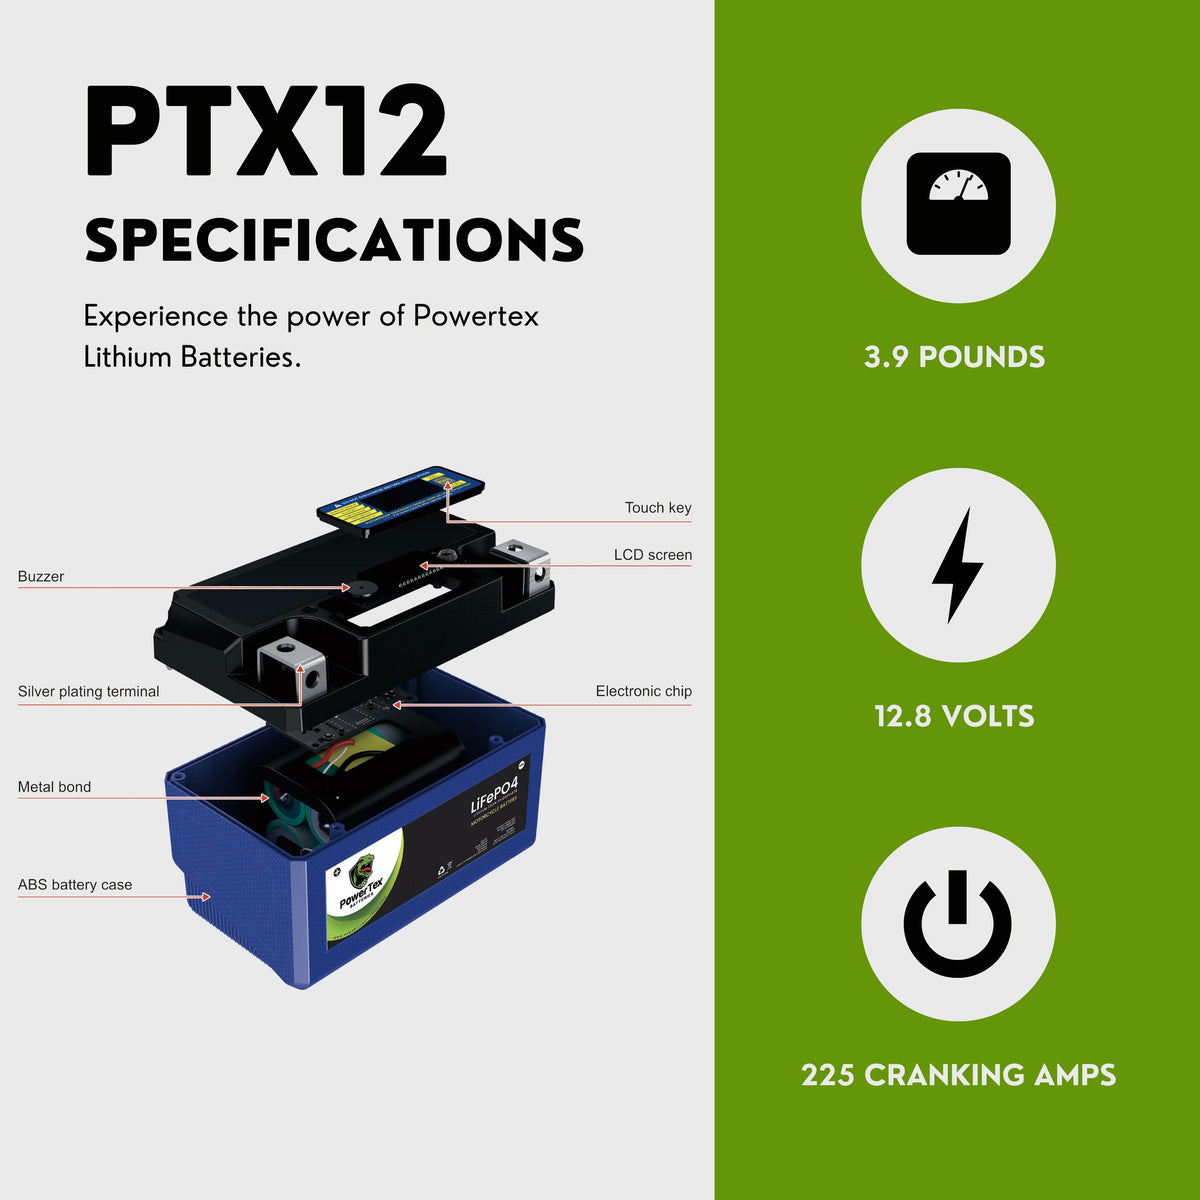 Batterie moto lithium 12V 12Ah YTX12-BS LiFePO4 batterie ion moto